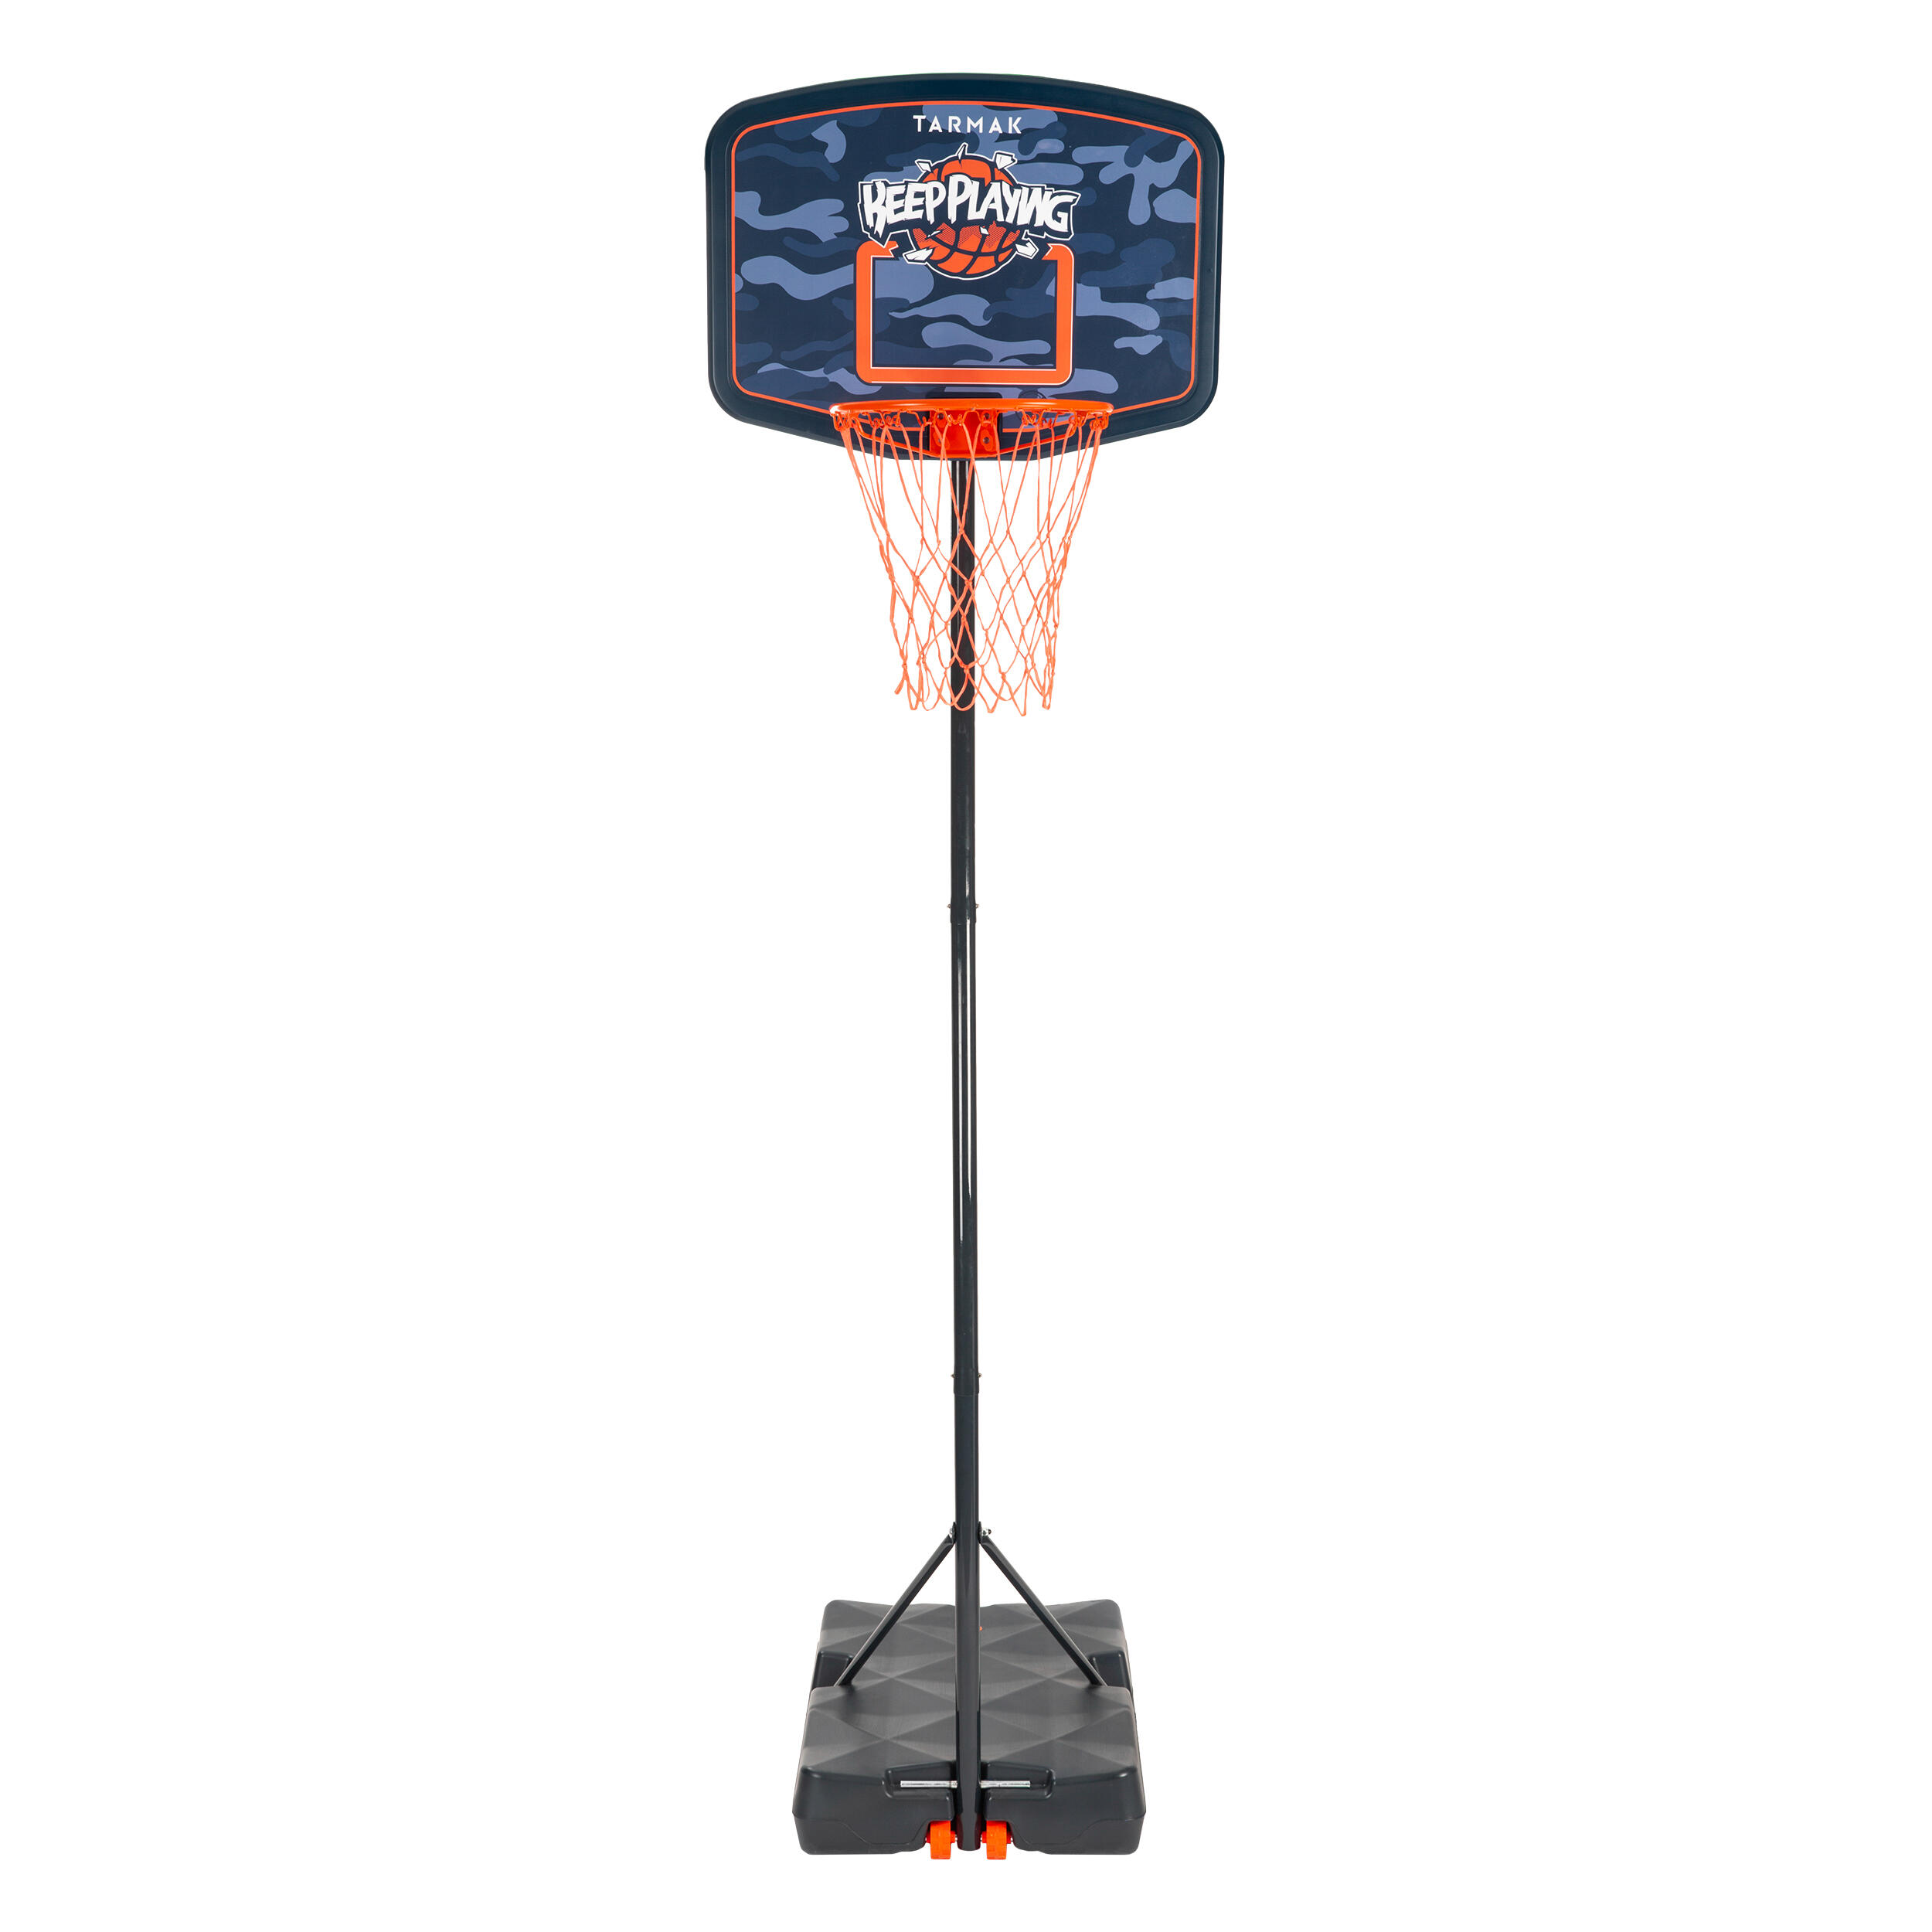 Twitfish® Mini Canestro da Basket per uso Domestico o4H BasketBall Time 